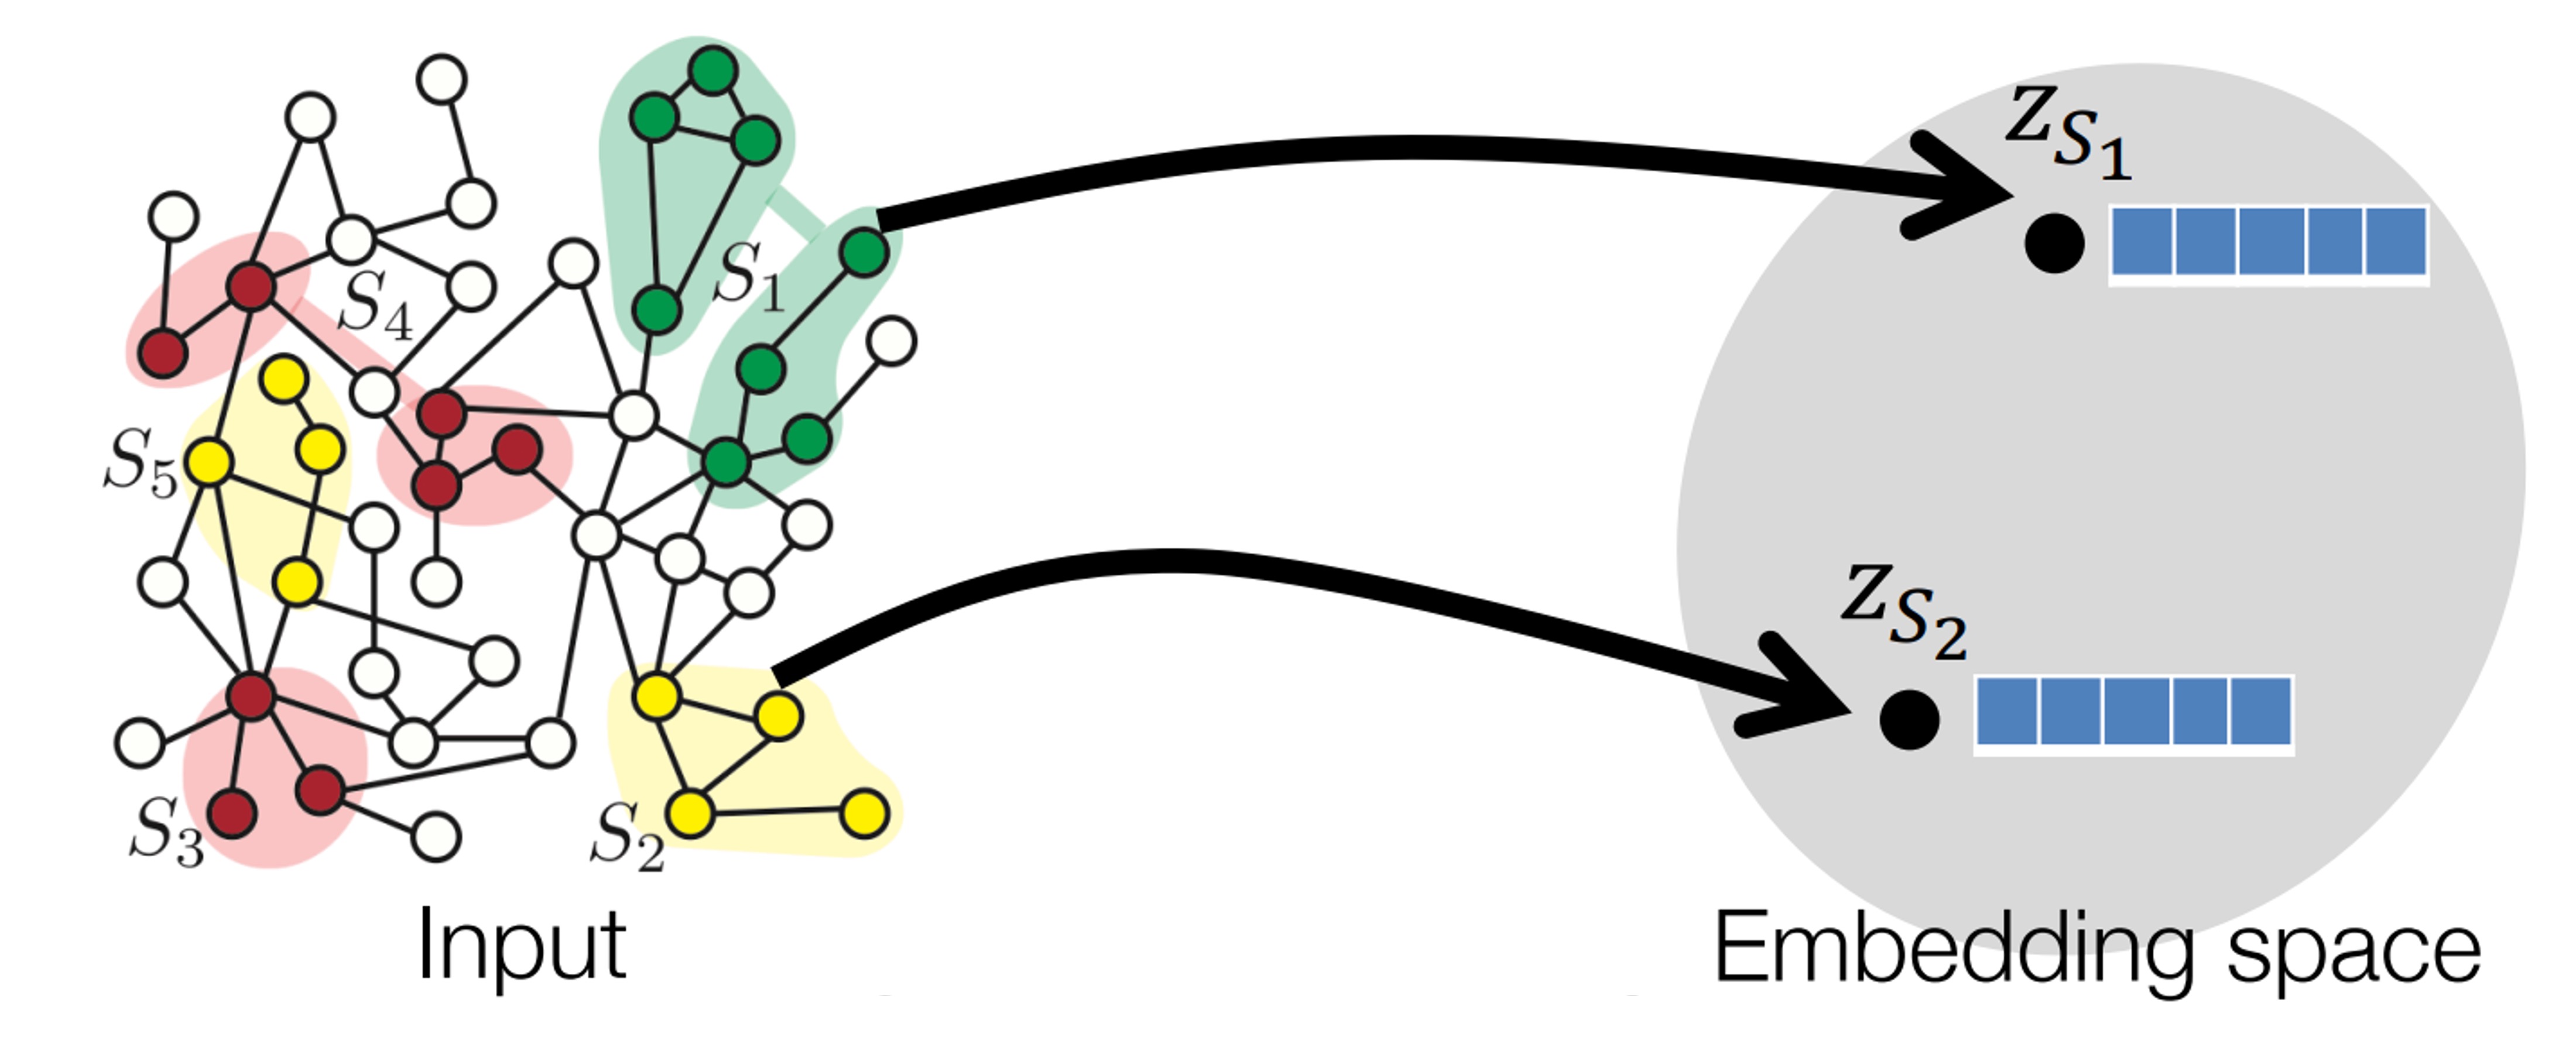 通过图神经网络学习子图的表示。
互不相连的邻域构成了子图内的子体 components。左图的红色子图有三个子图， 黄色子图有两个子体， 绿色子图也有两个子体  